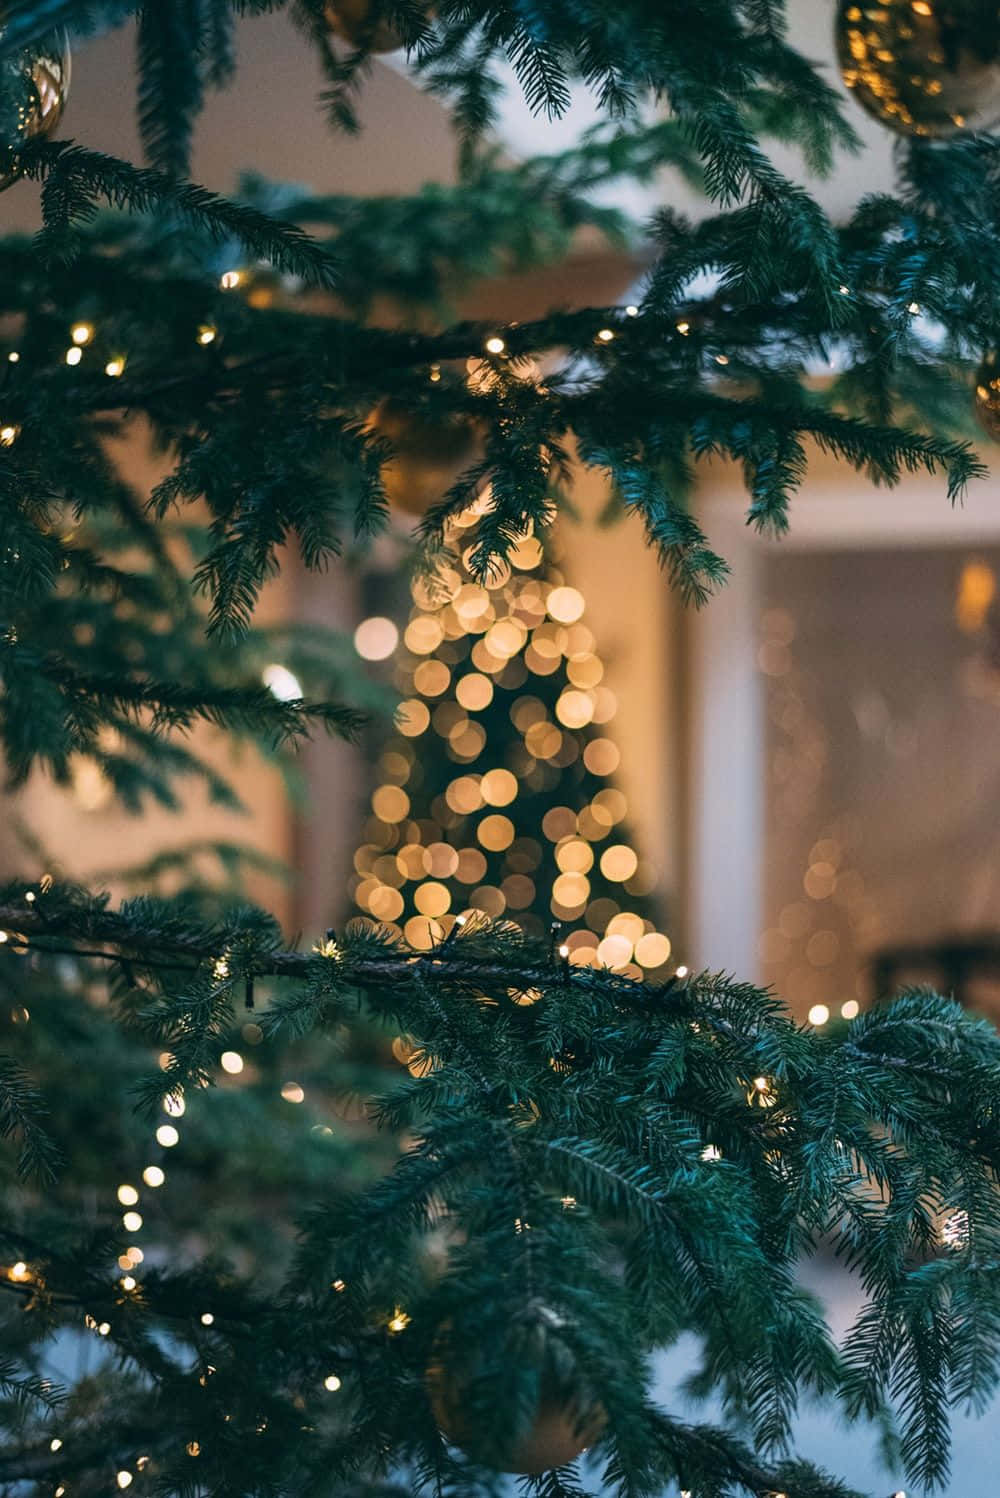 Imagende Luces De Navidad En Un Árbol De Pino